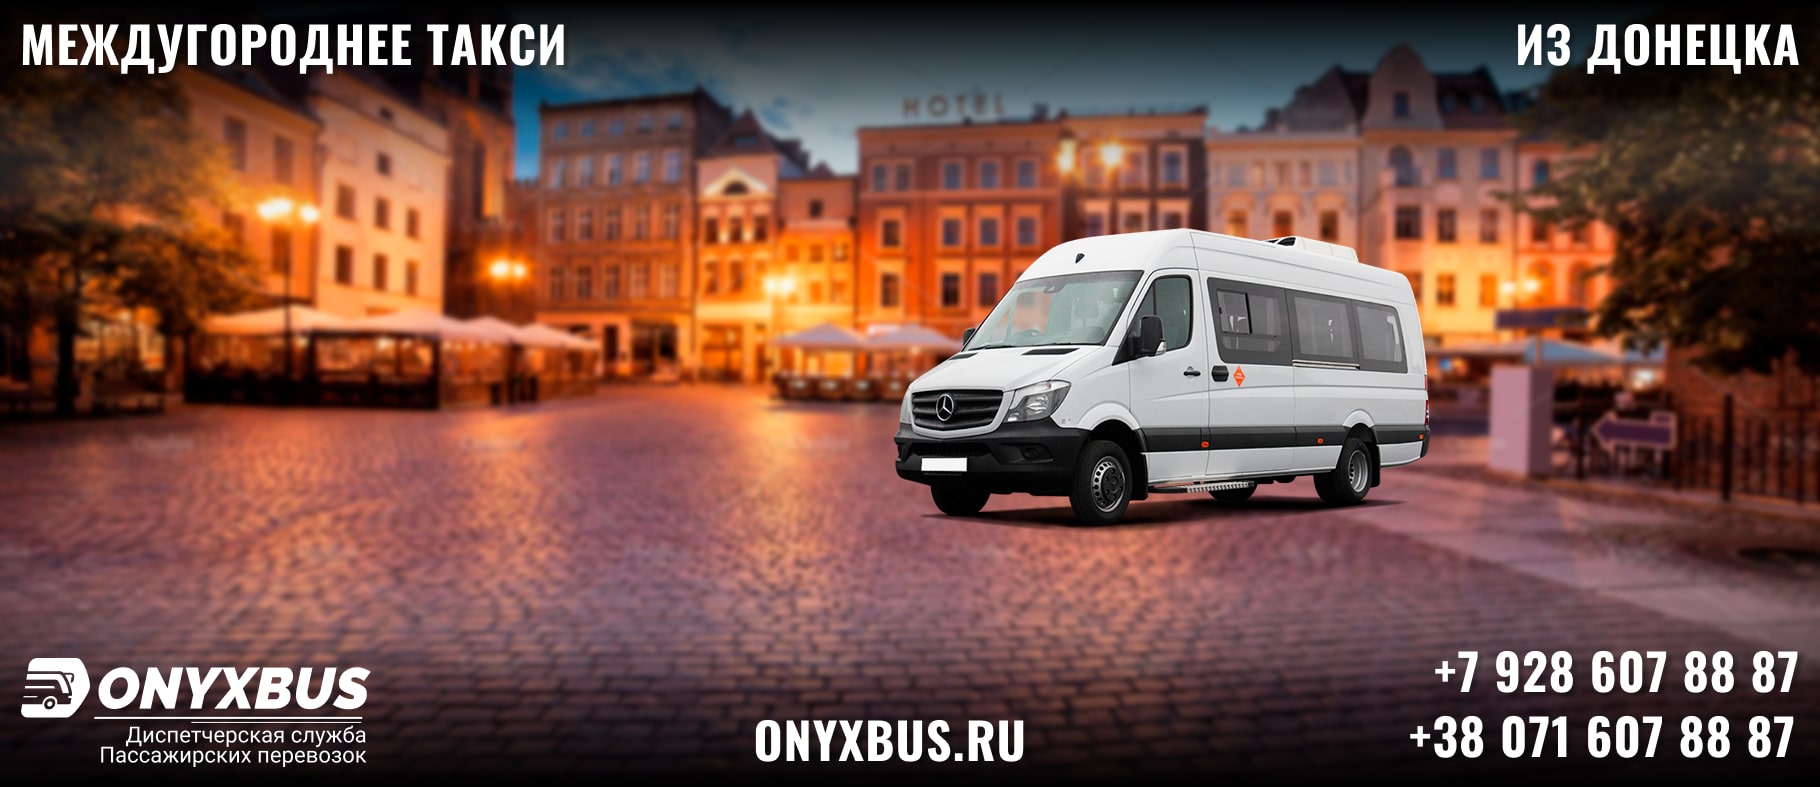 Заказ <br>Микроавтобуса Туапсе - Донецк